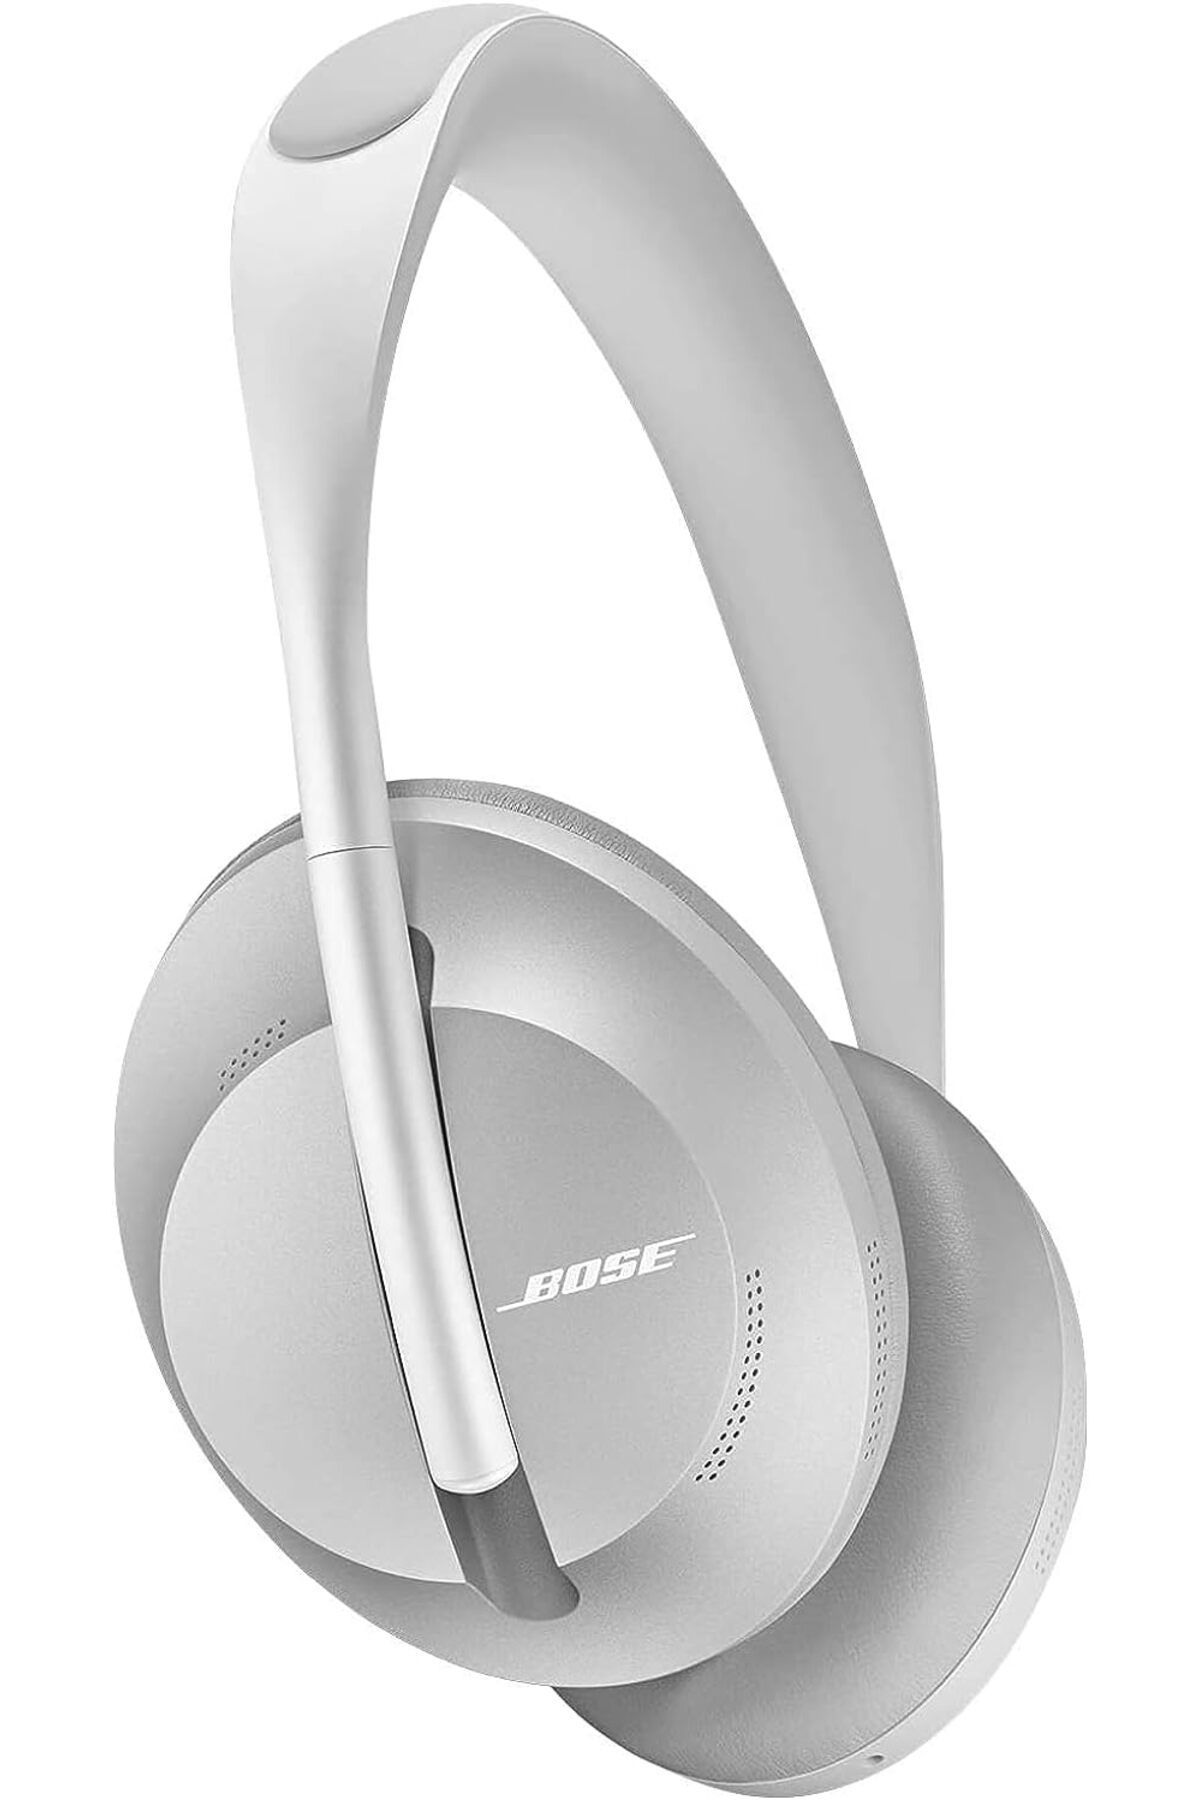 Genel Markalar Noise Cancelling Headphones 700 - Kablosuz Kulak-Çevresi Gürültü Giderme Kulaklığı, Gümüş